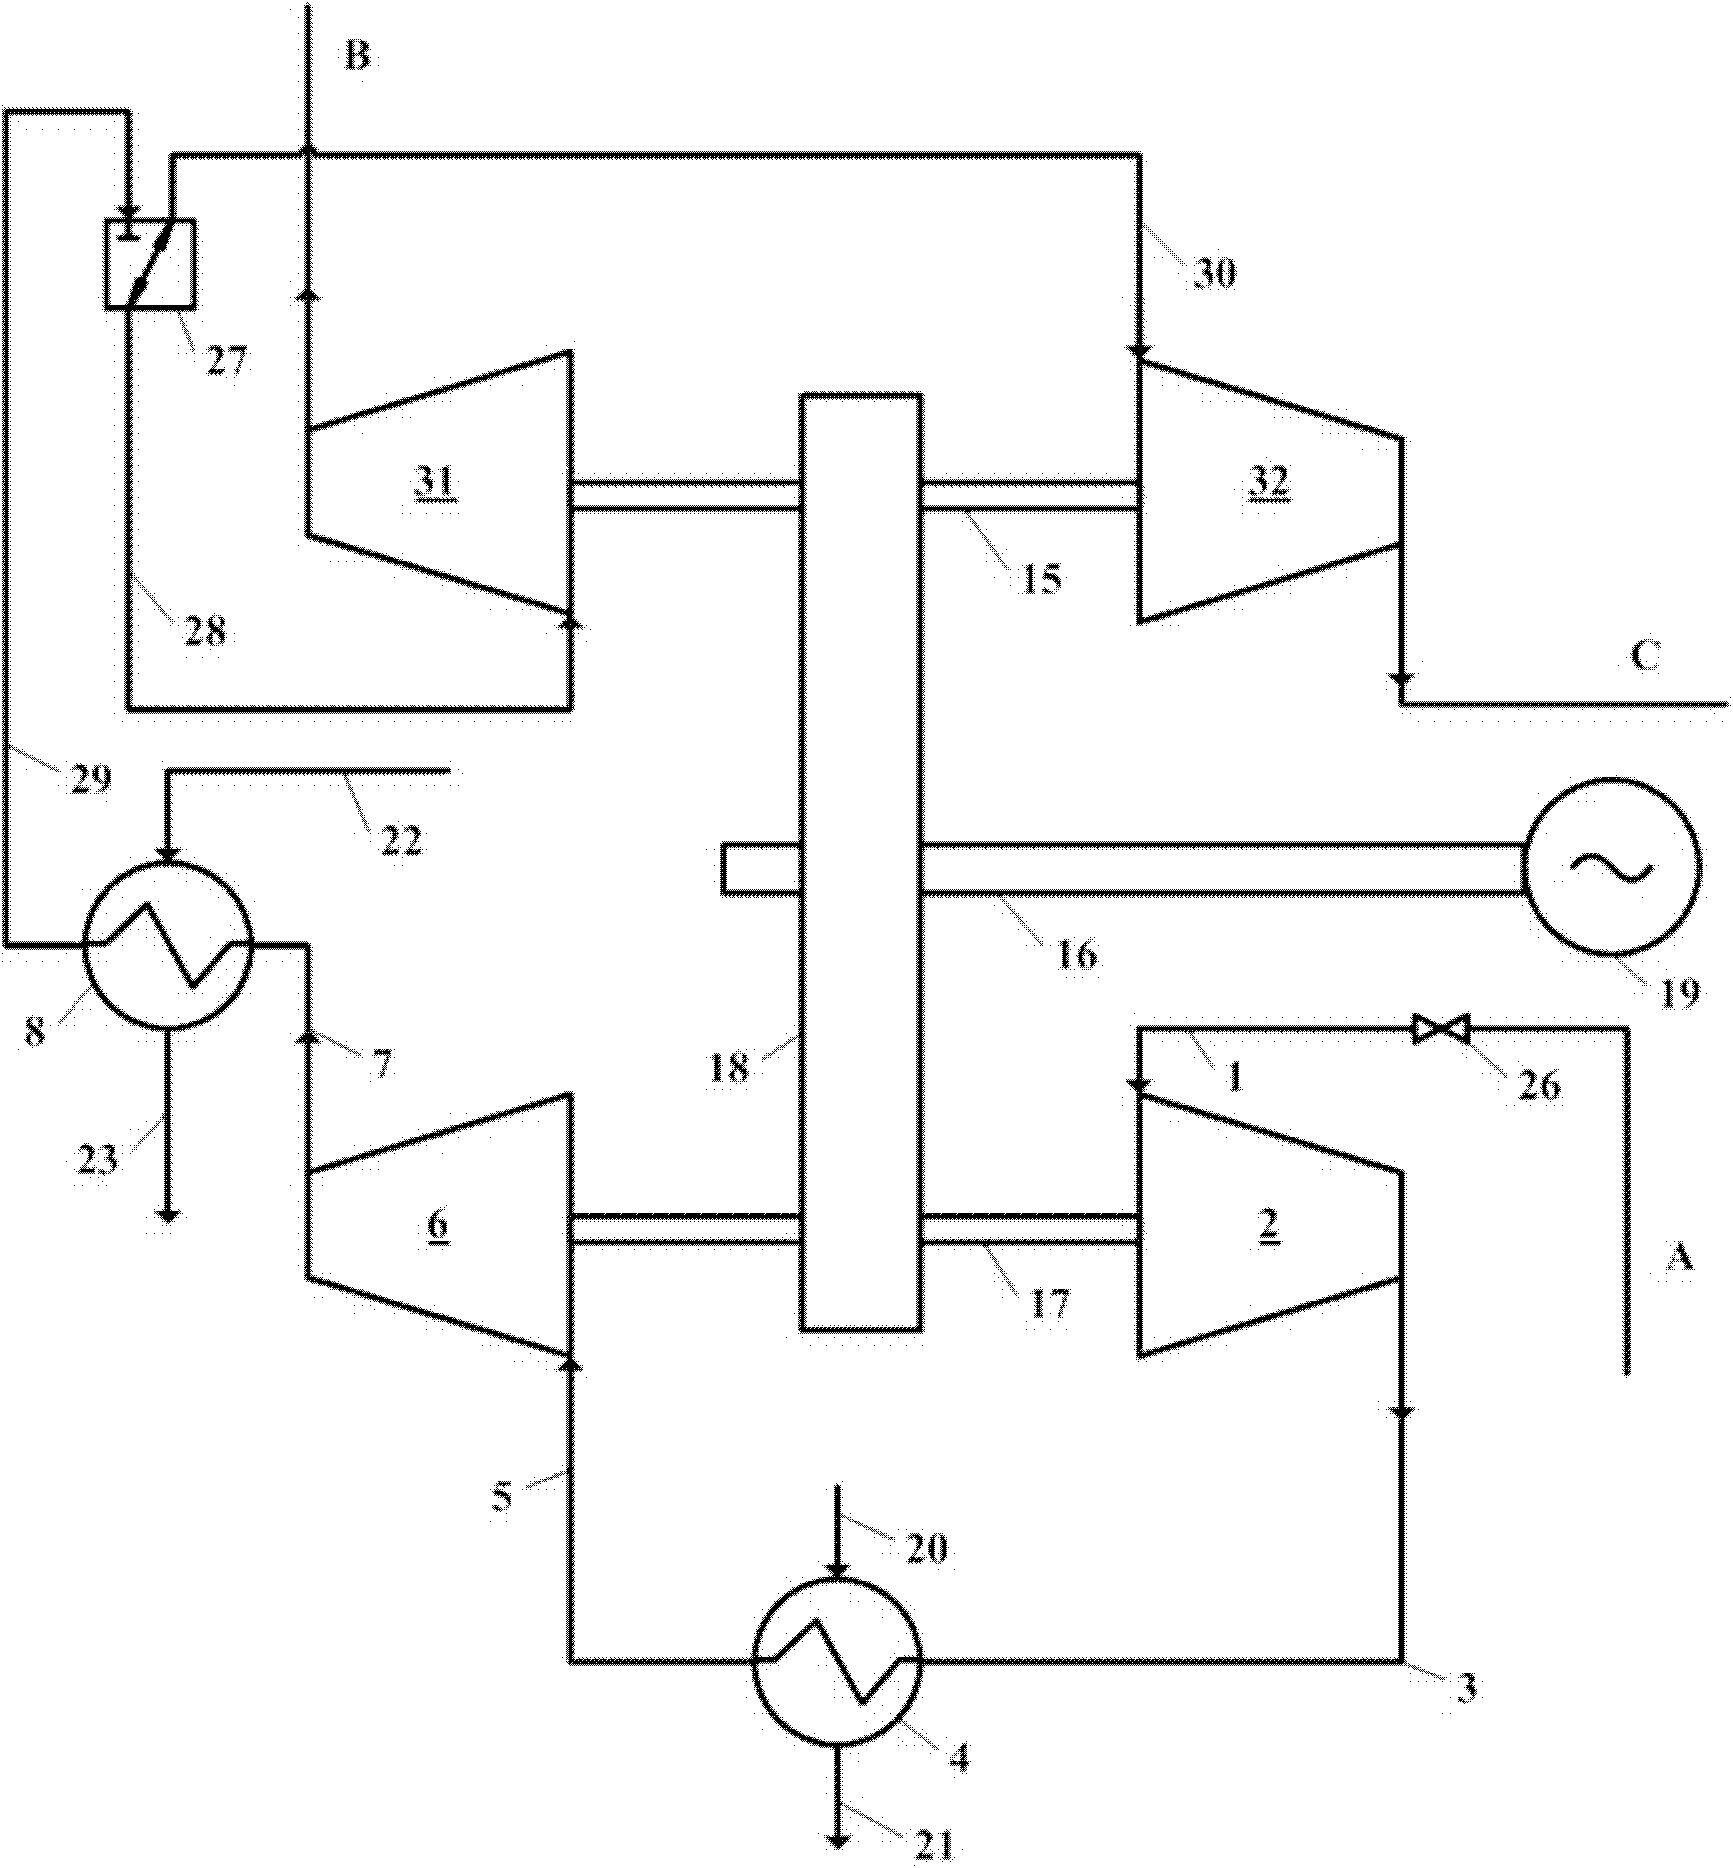 Multilevel centripetal turbine system